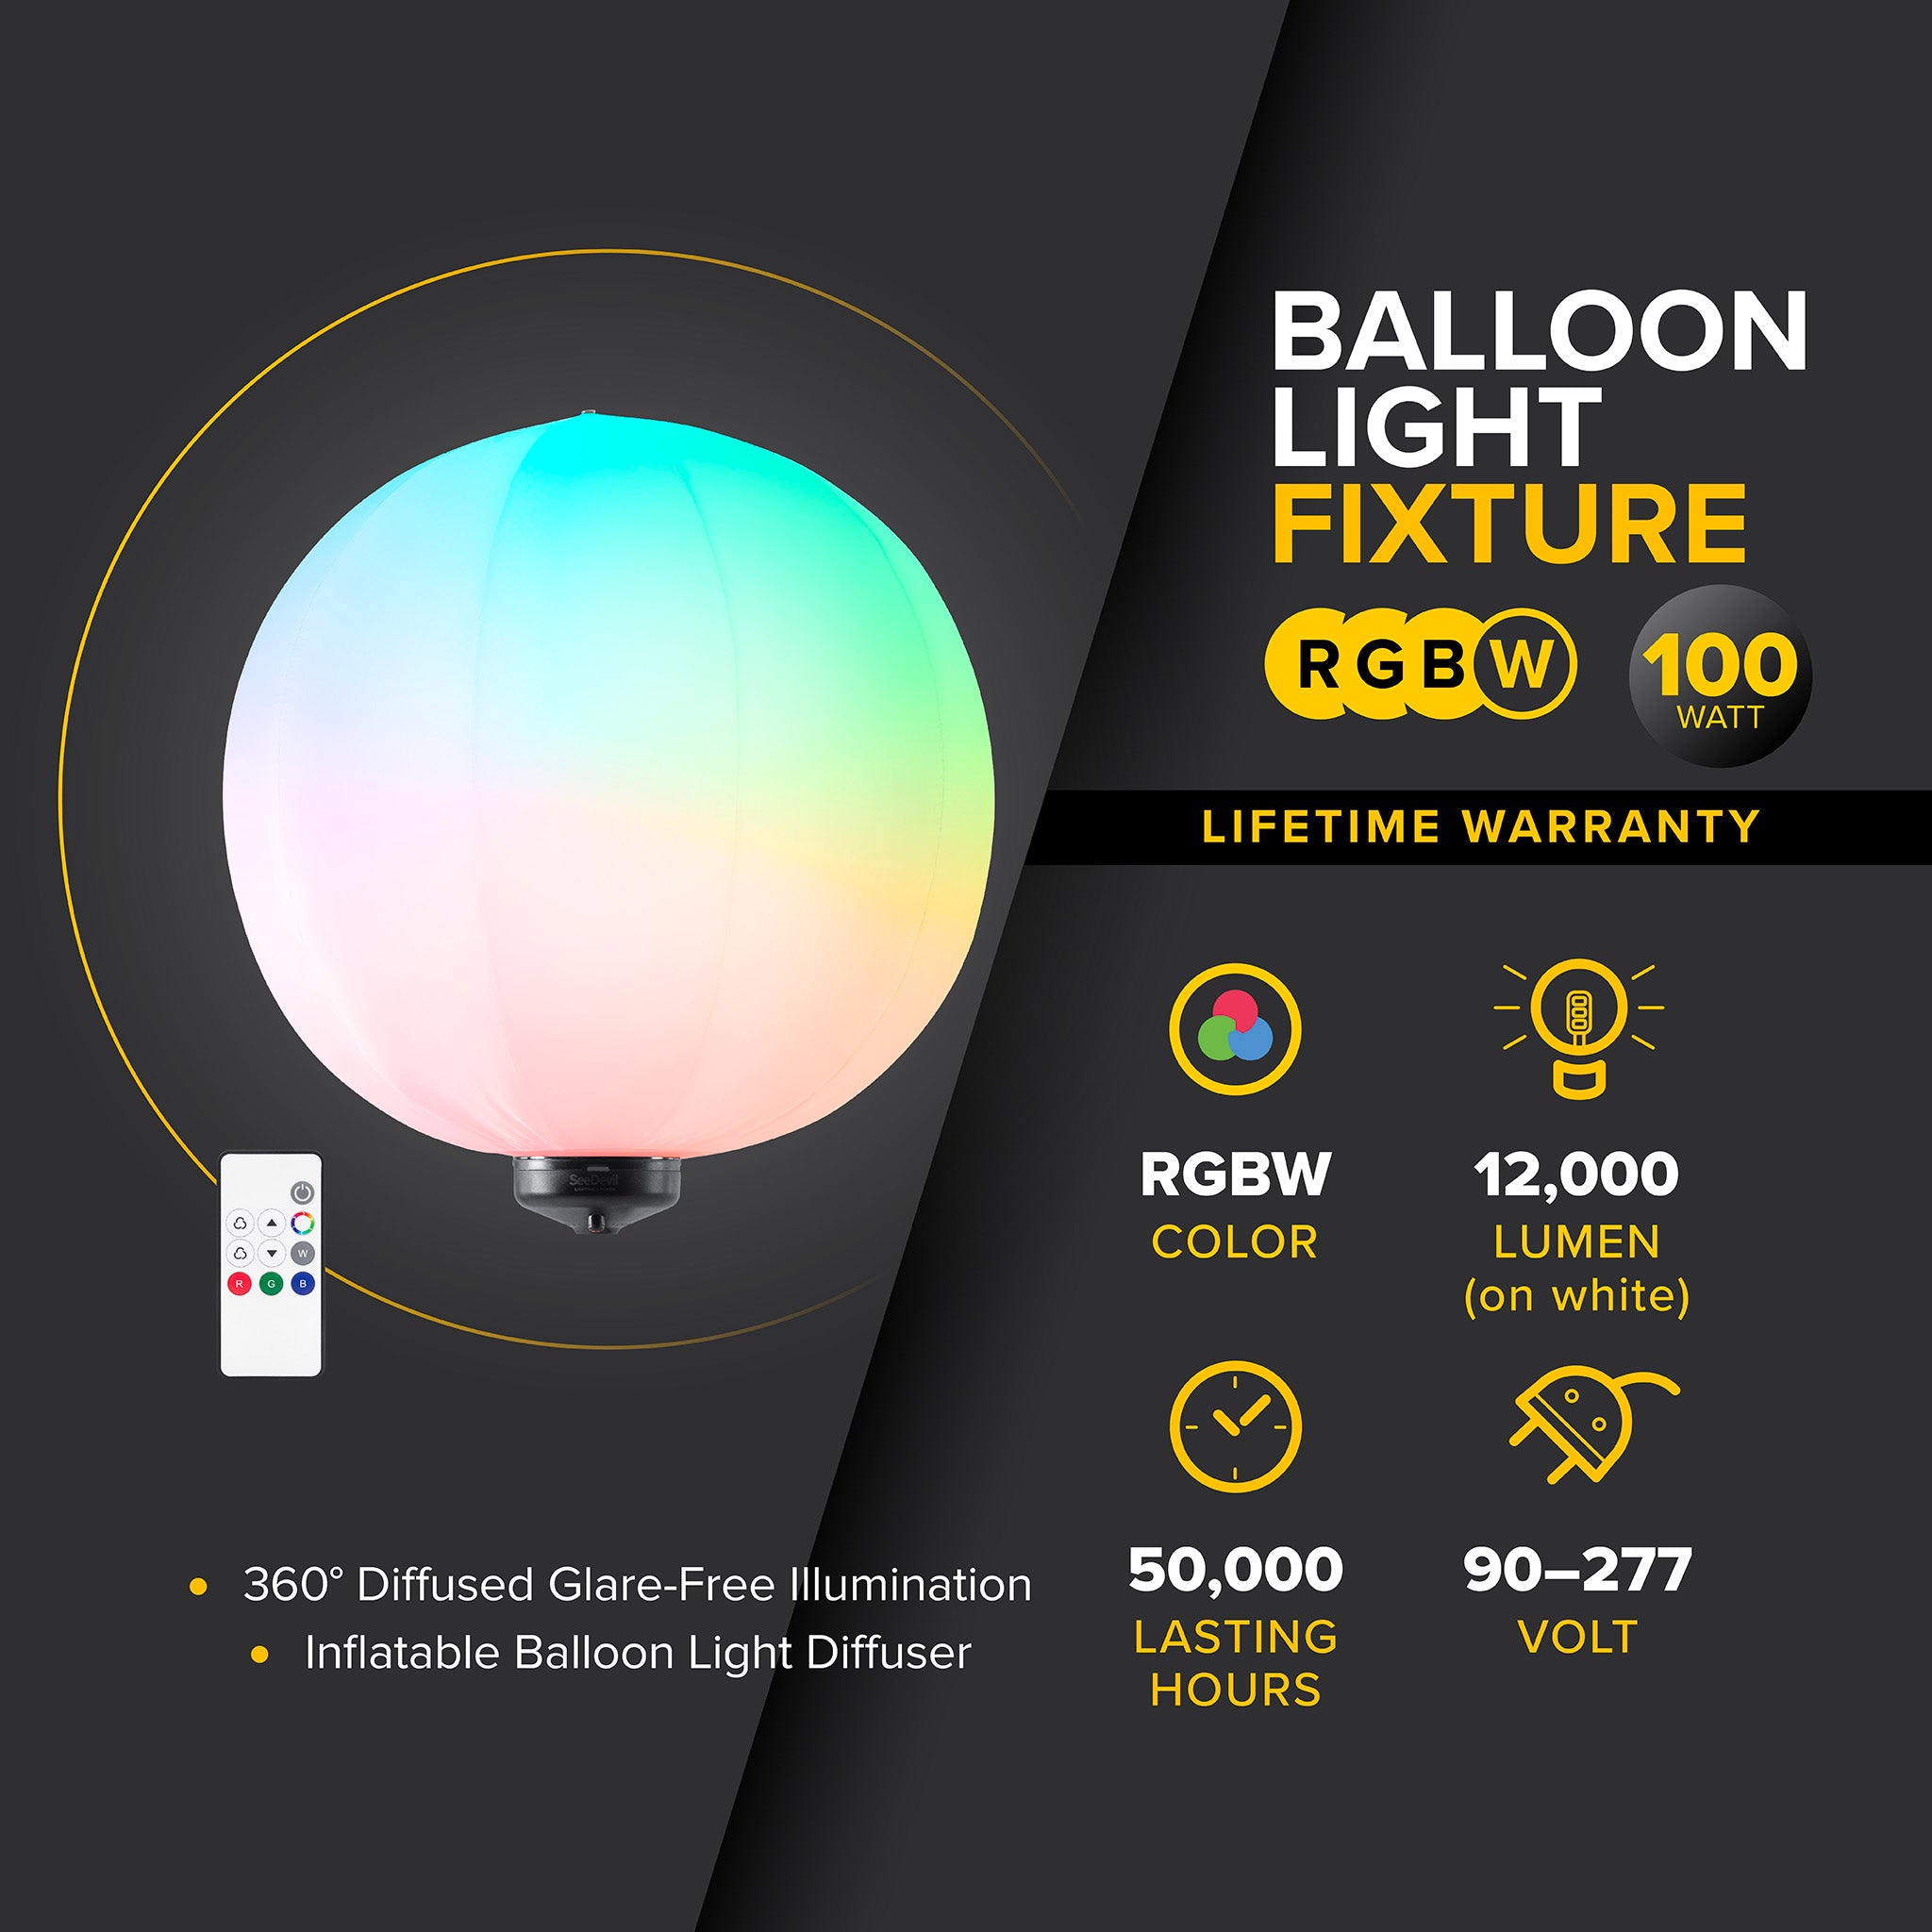 G3 100 Watt RGBW Balloon Light Fixture